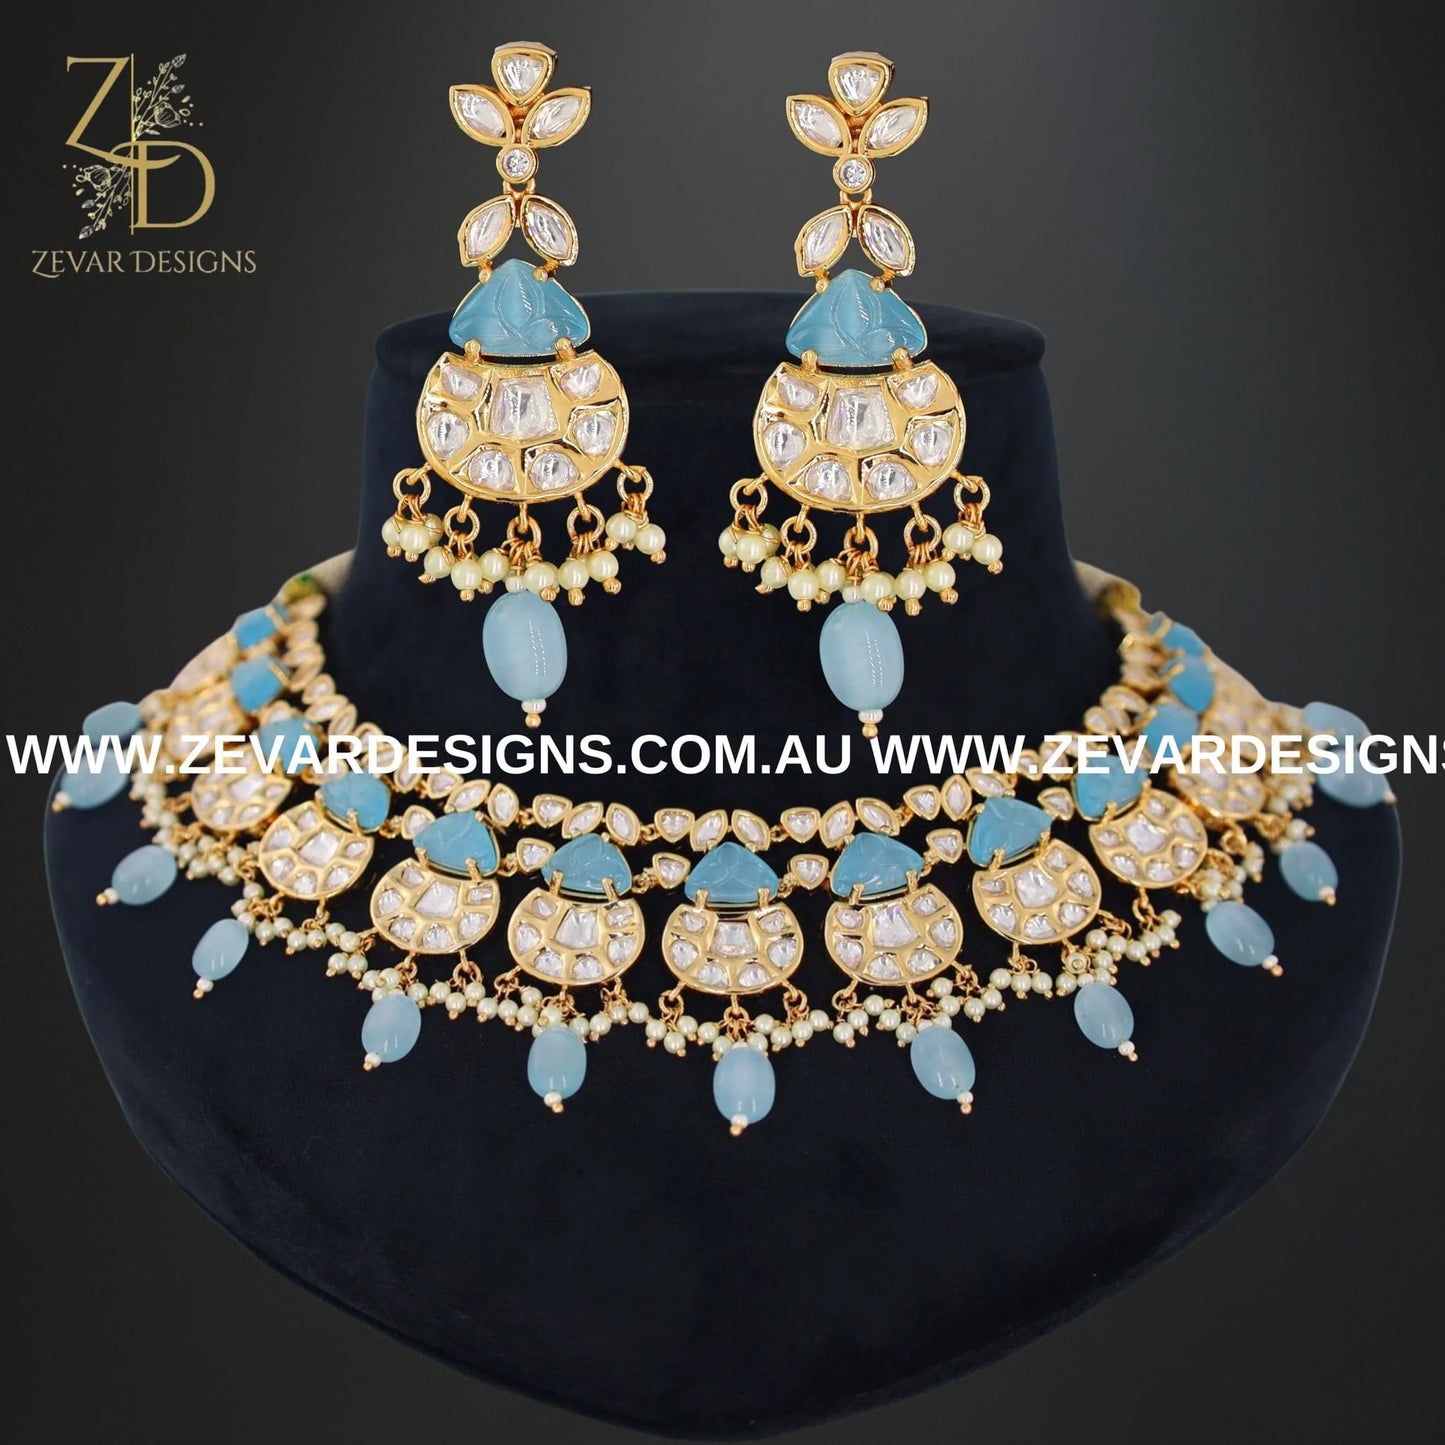 Zevar Designs Necklace Sets Kundan Polki Necklace Set with Powder Blue Carved Stones